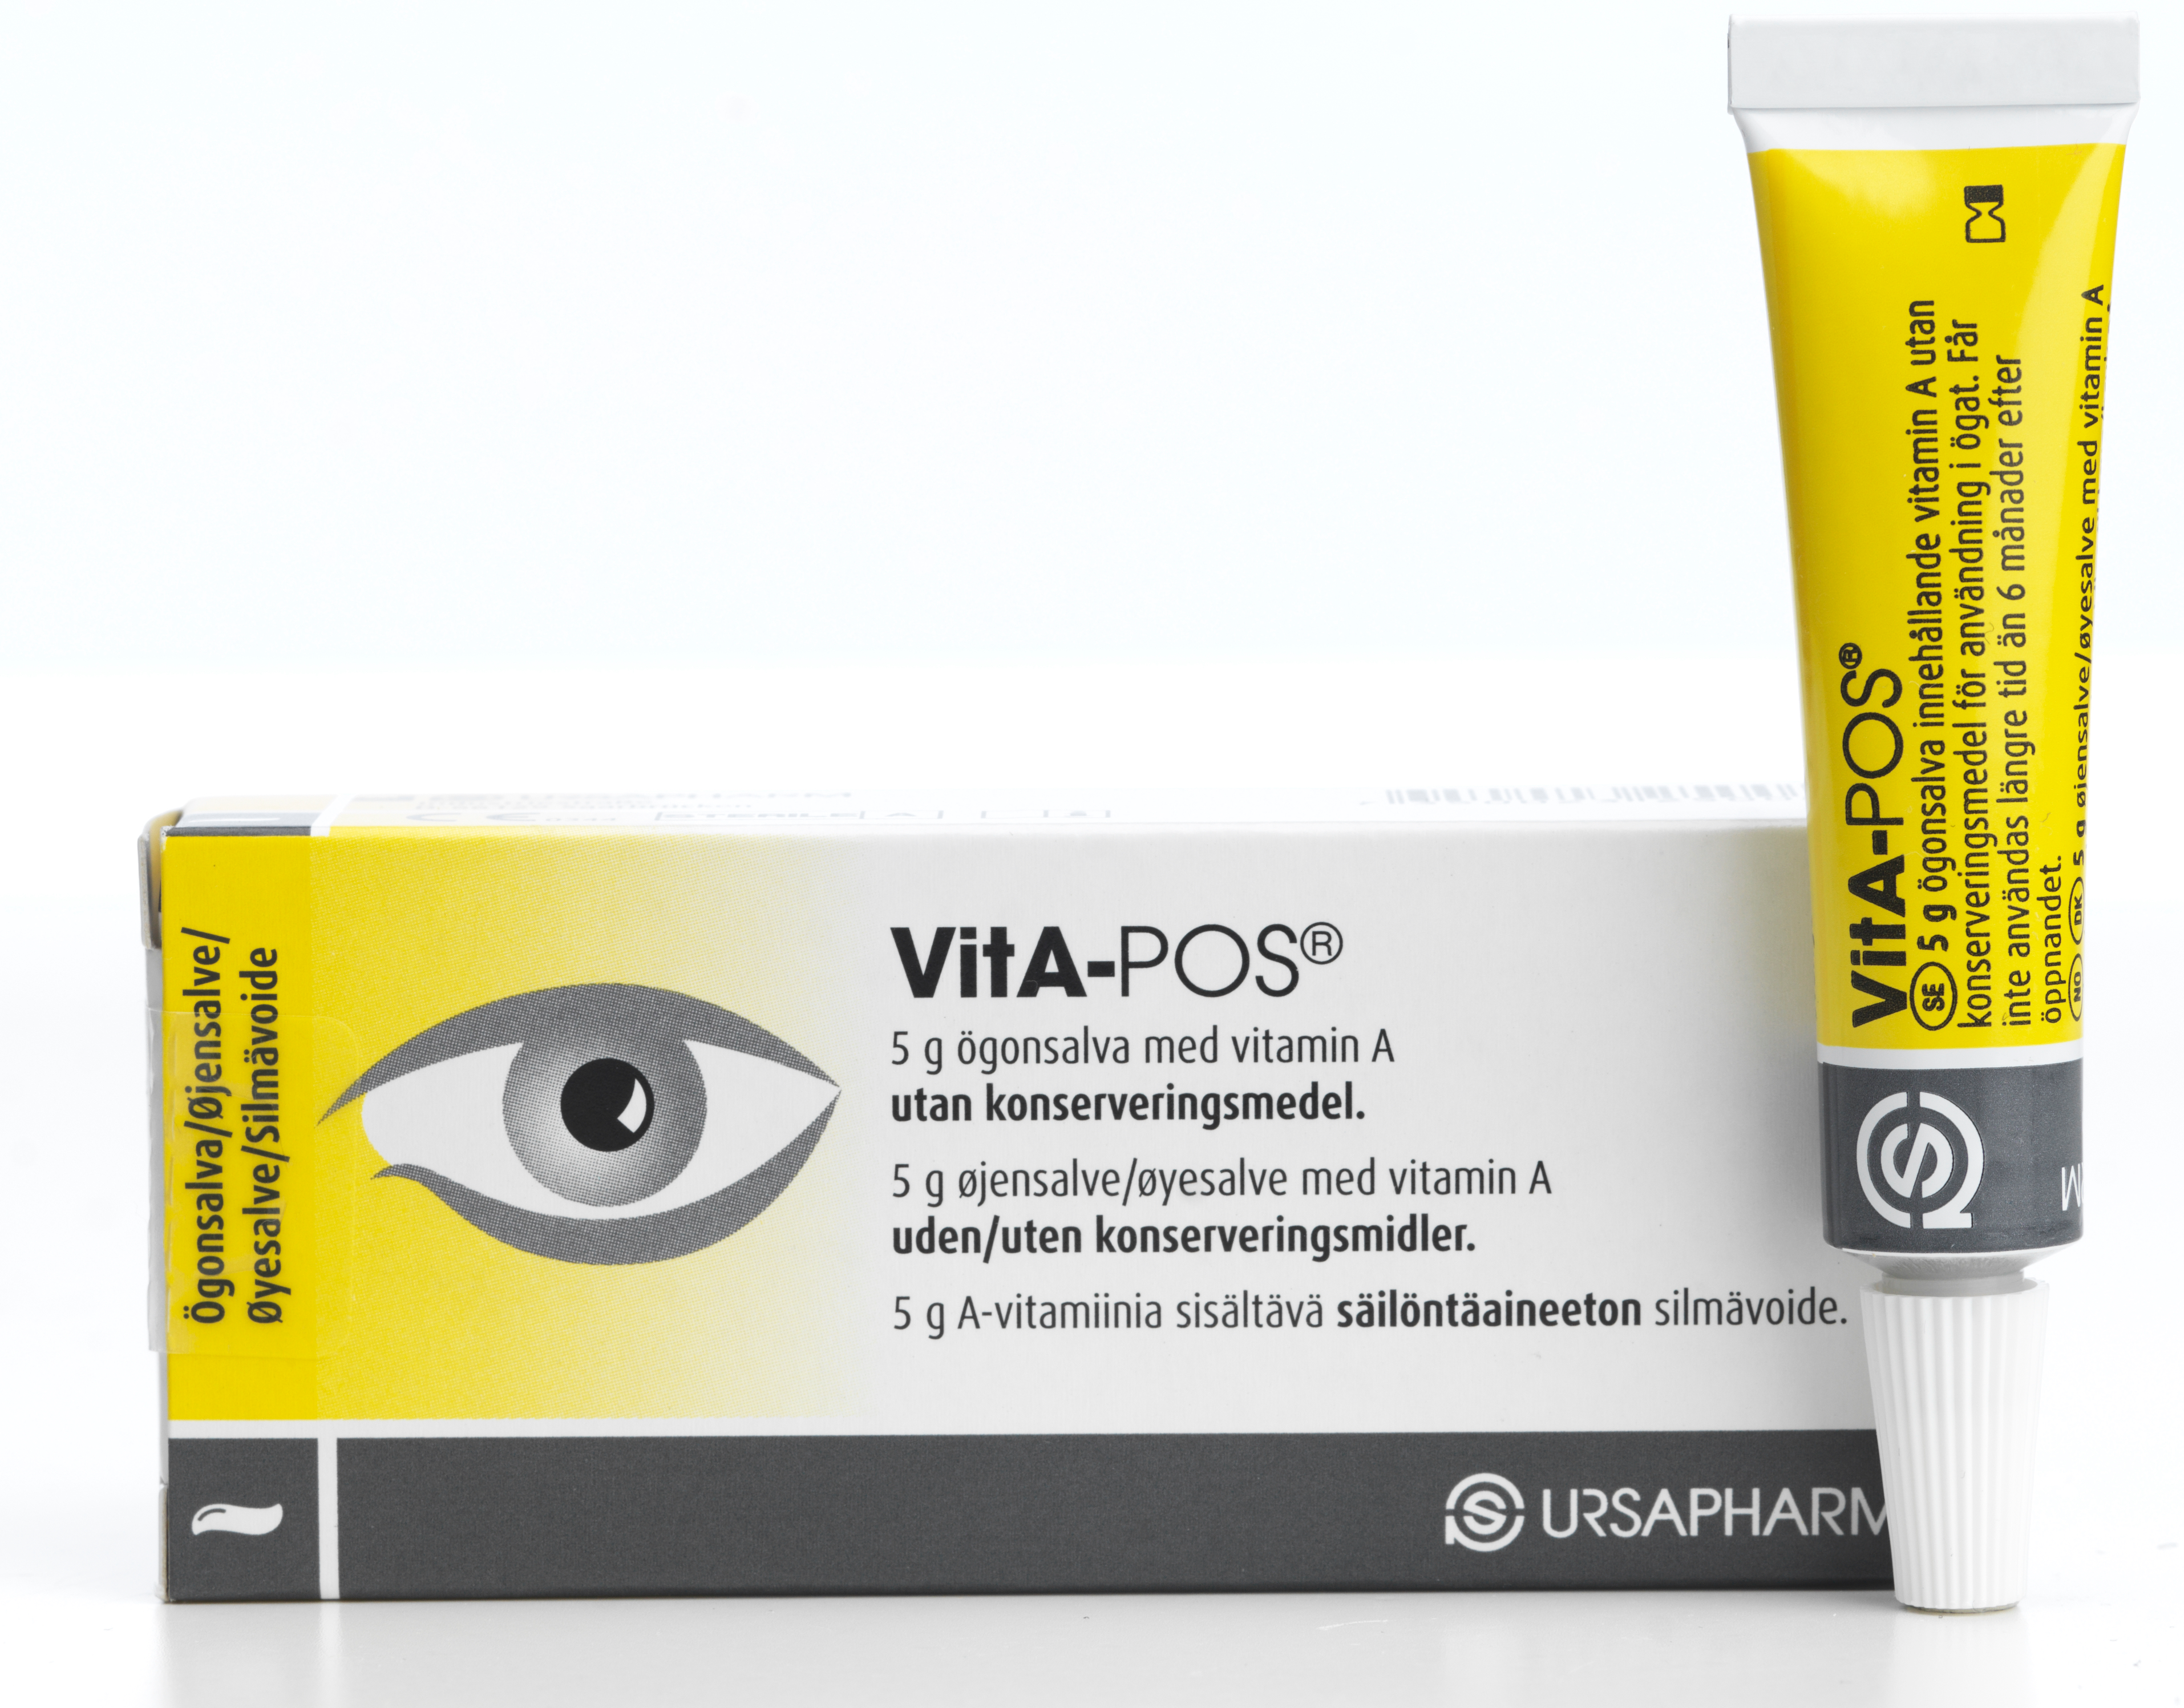 VitA-POS ögonsalva 5 g